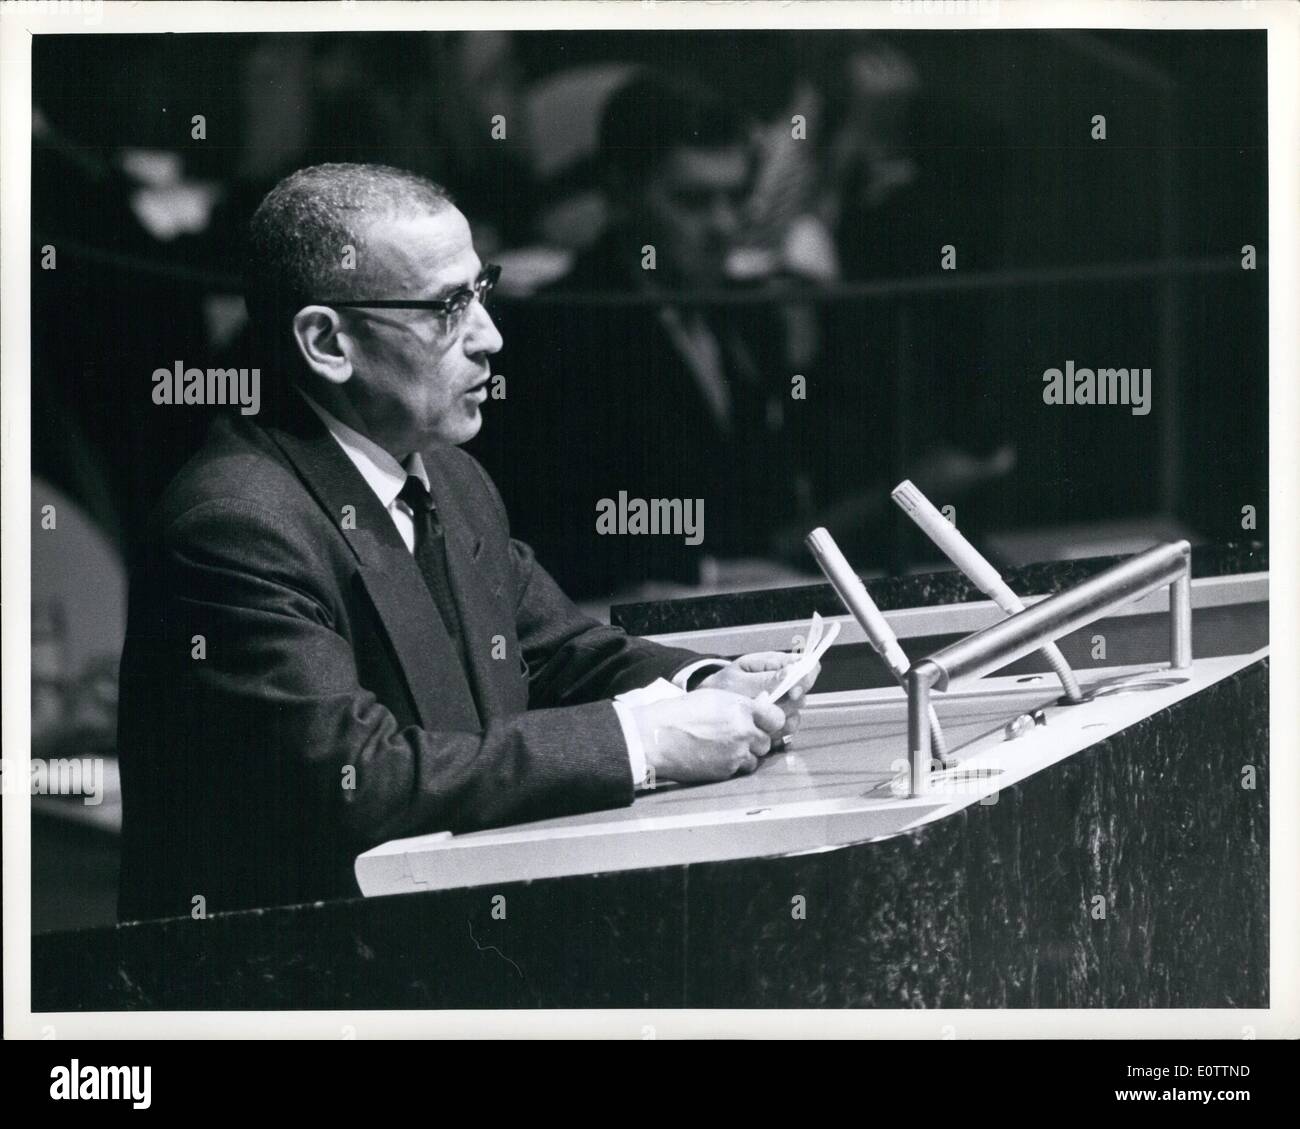 Septembre 09, 1960 - 13 Etats africains et Chypre admis à l'ONU : l'un de ses premiers actes, la 15e session ordinaire de l'Assemblée générale des Nations Unies, qui a ouvert ses portes aujourd'hui à New York, à l'unanimité a admis 14 nouveaux membres à l'Organisation des Nations Unies. Cela porte le nombre total des États membres de l'ONU à 96, soit presque le double de sa composition originale. Ici, M. Drise M'Hammedi ; Ministre des affaires étrangères du Maroc, est vu comme il a prolongé son Bienvenue sur le nouveaux membres DES NATIONS UNIES. Banque D'Images